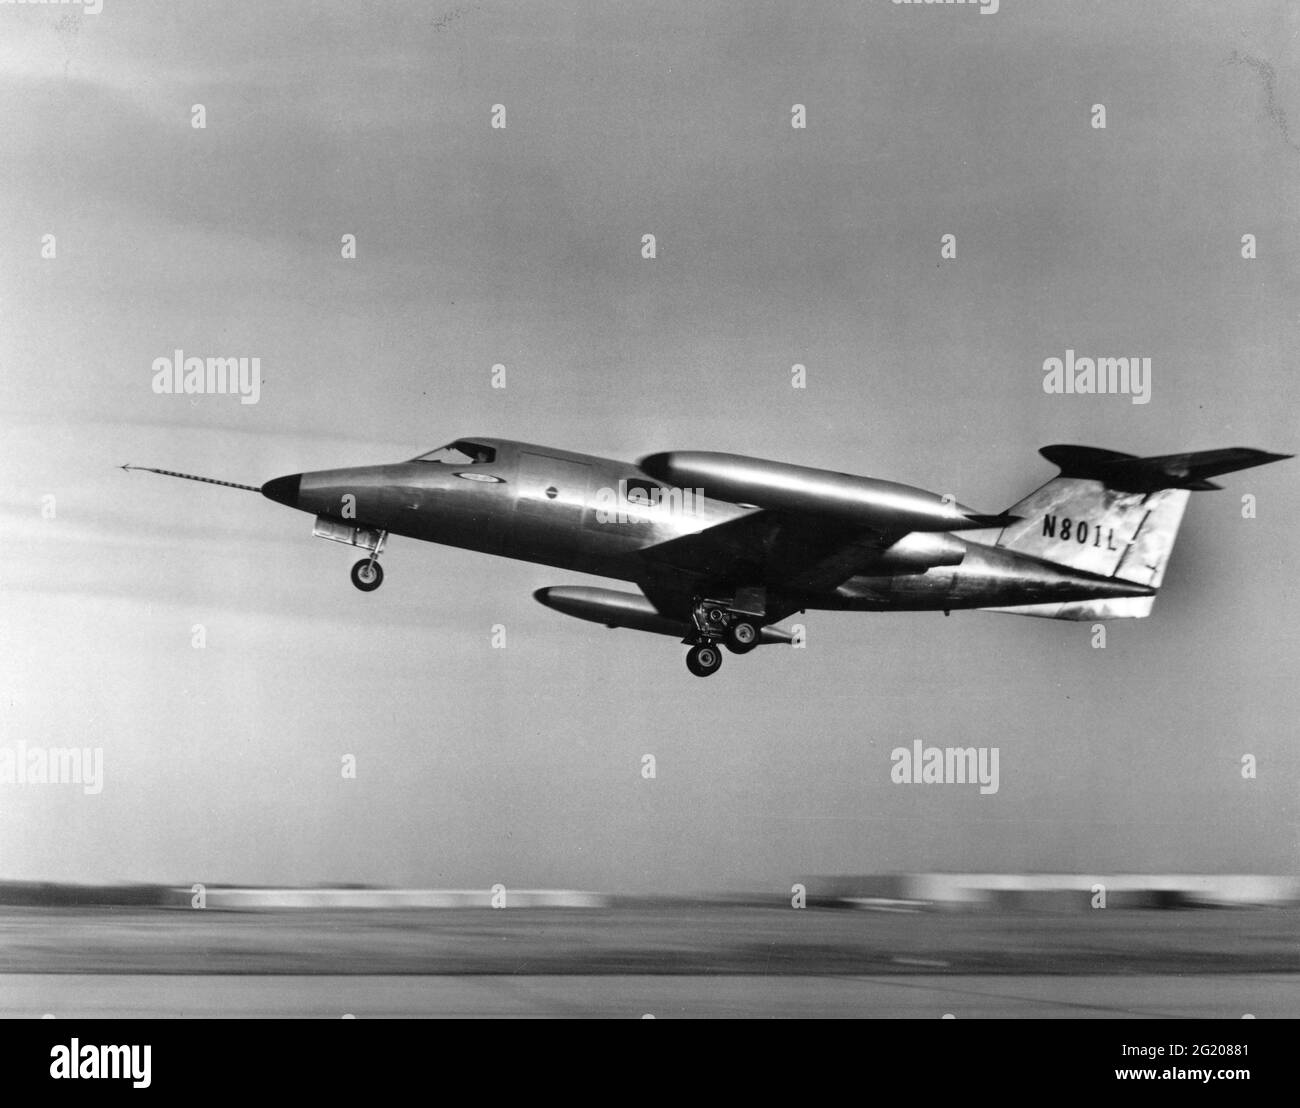 Eines der ersten privaten Luxusflugzeuge, der Learjet 23, Seriennummer 23-001 (N801L), hebt auf seinen Erstflug, Wichita, KS, 10/7/1963. (Foto von Federal Aviation Administration/RBM Vintage Images) Stockfoto